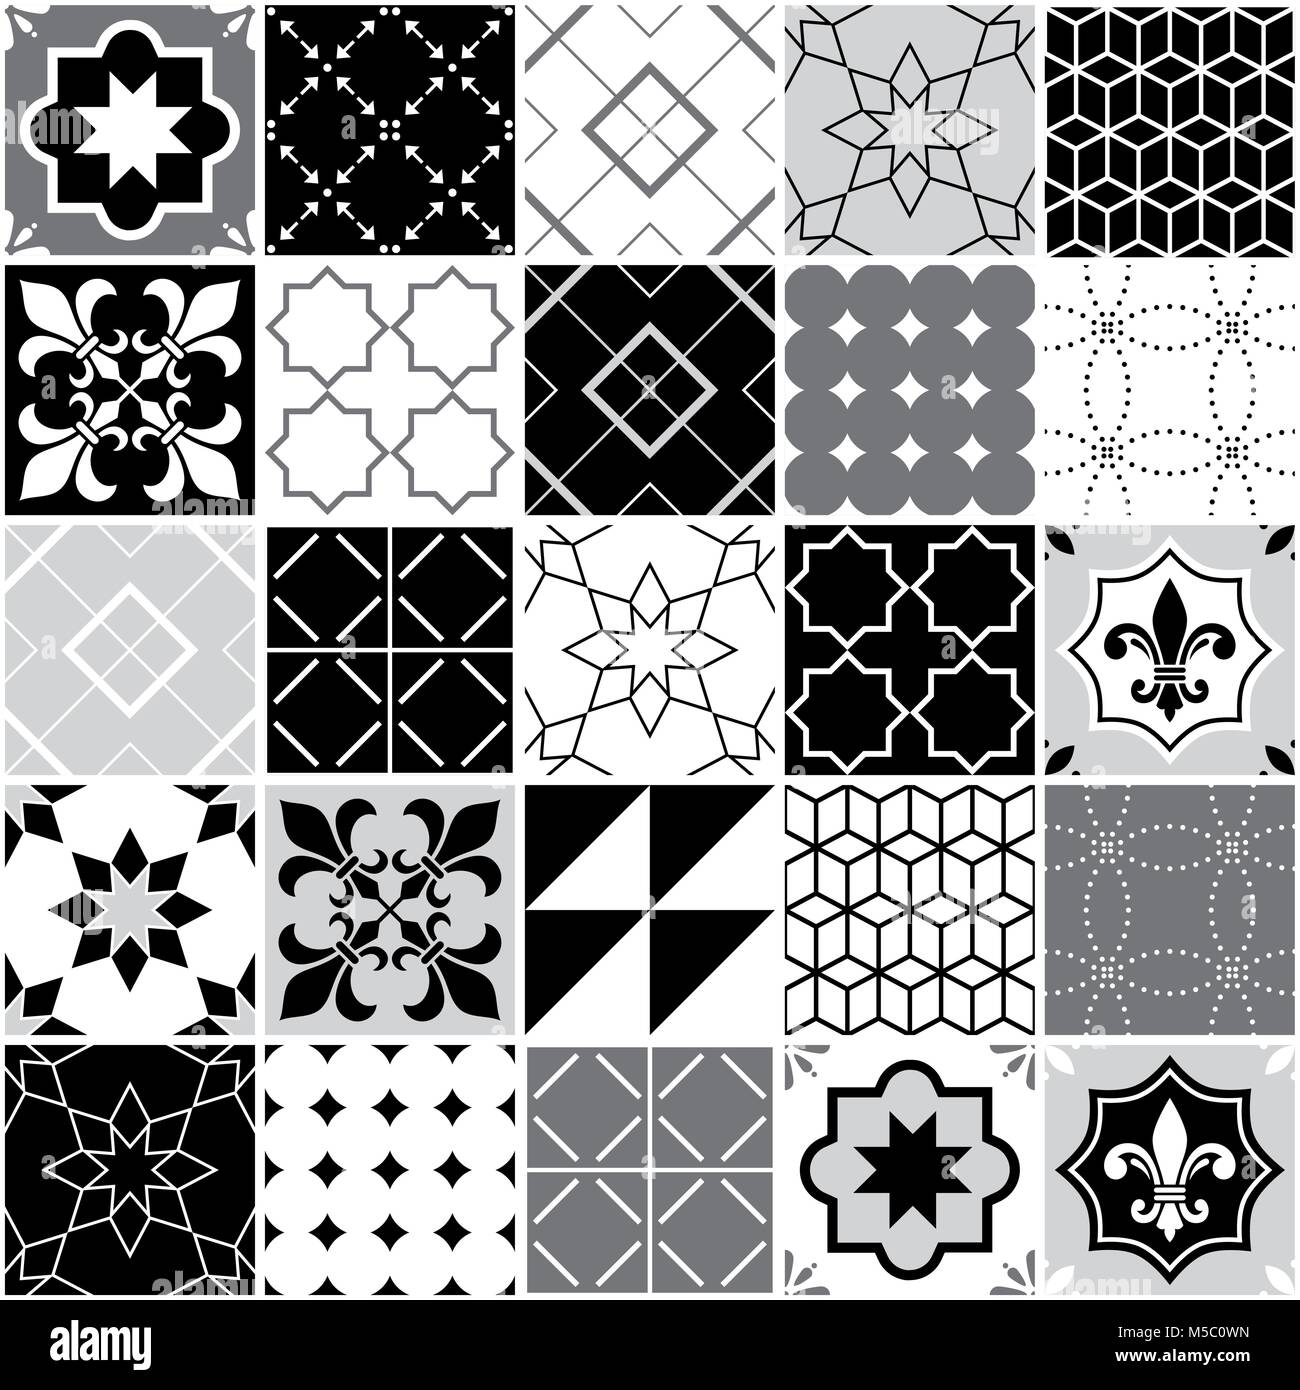 Carreaux azulejos portugais, modèle de tuile vectoriel continu, géométrique et floral design - noir, blanc et gris patchwork Illustration de Vecteur